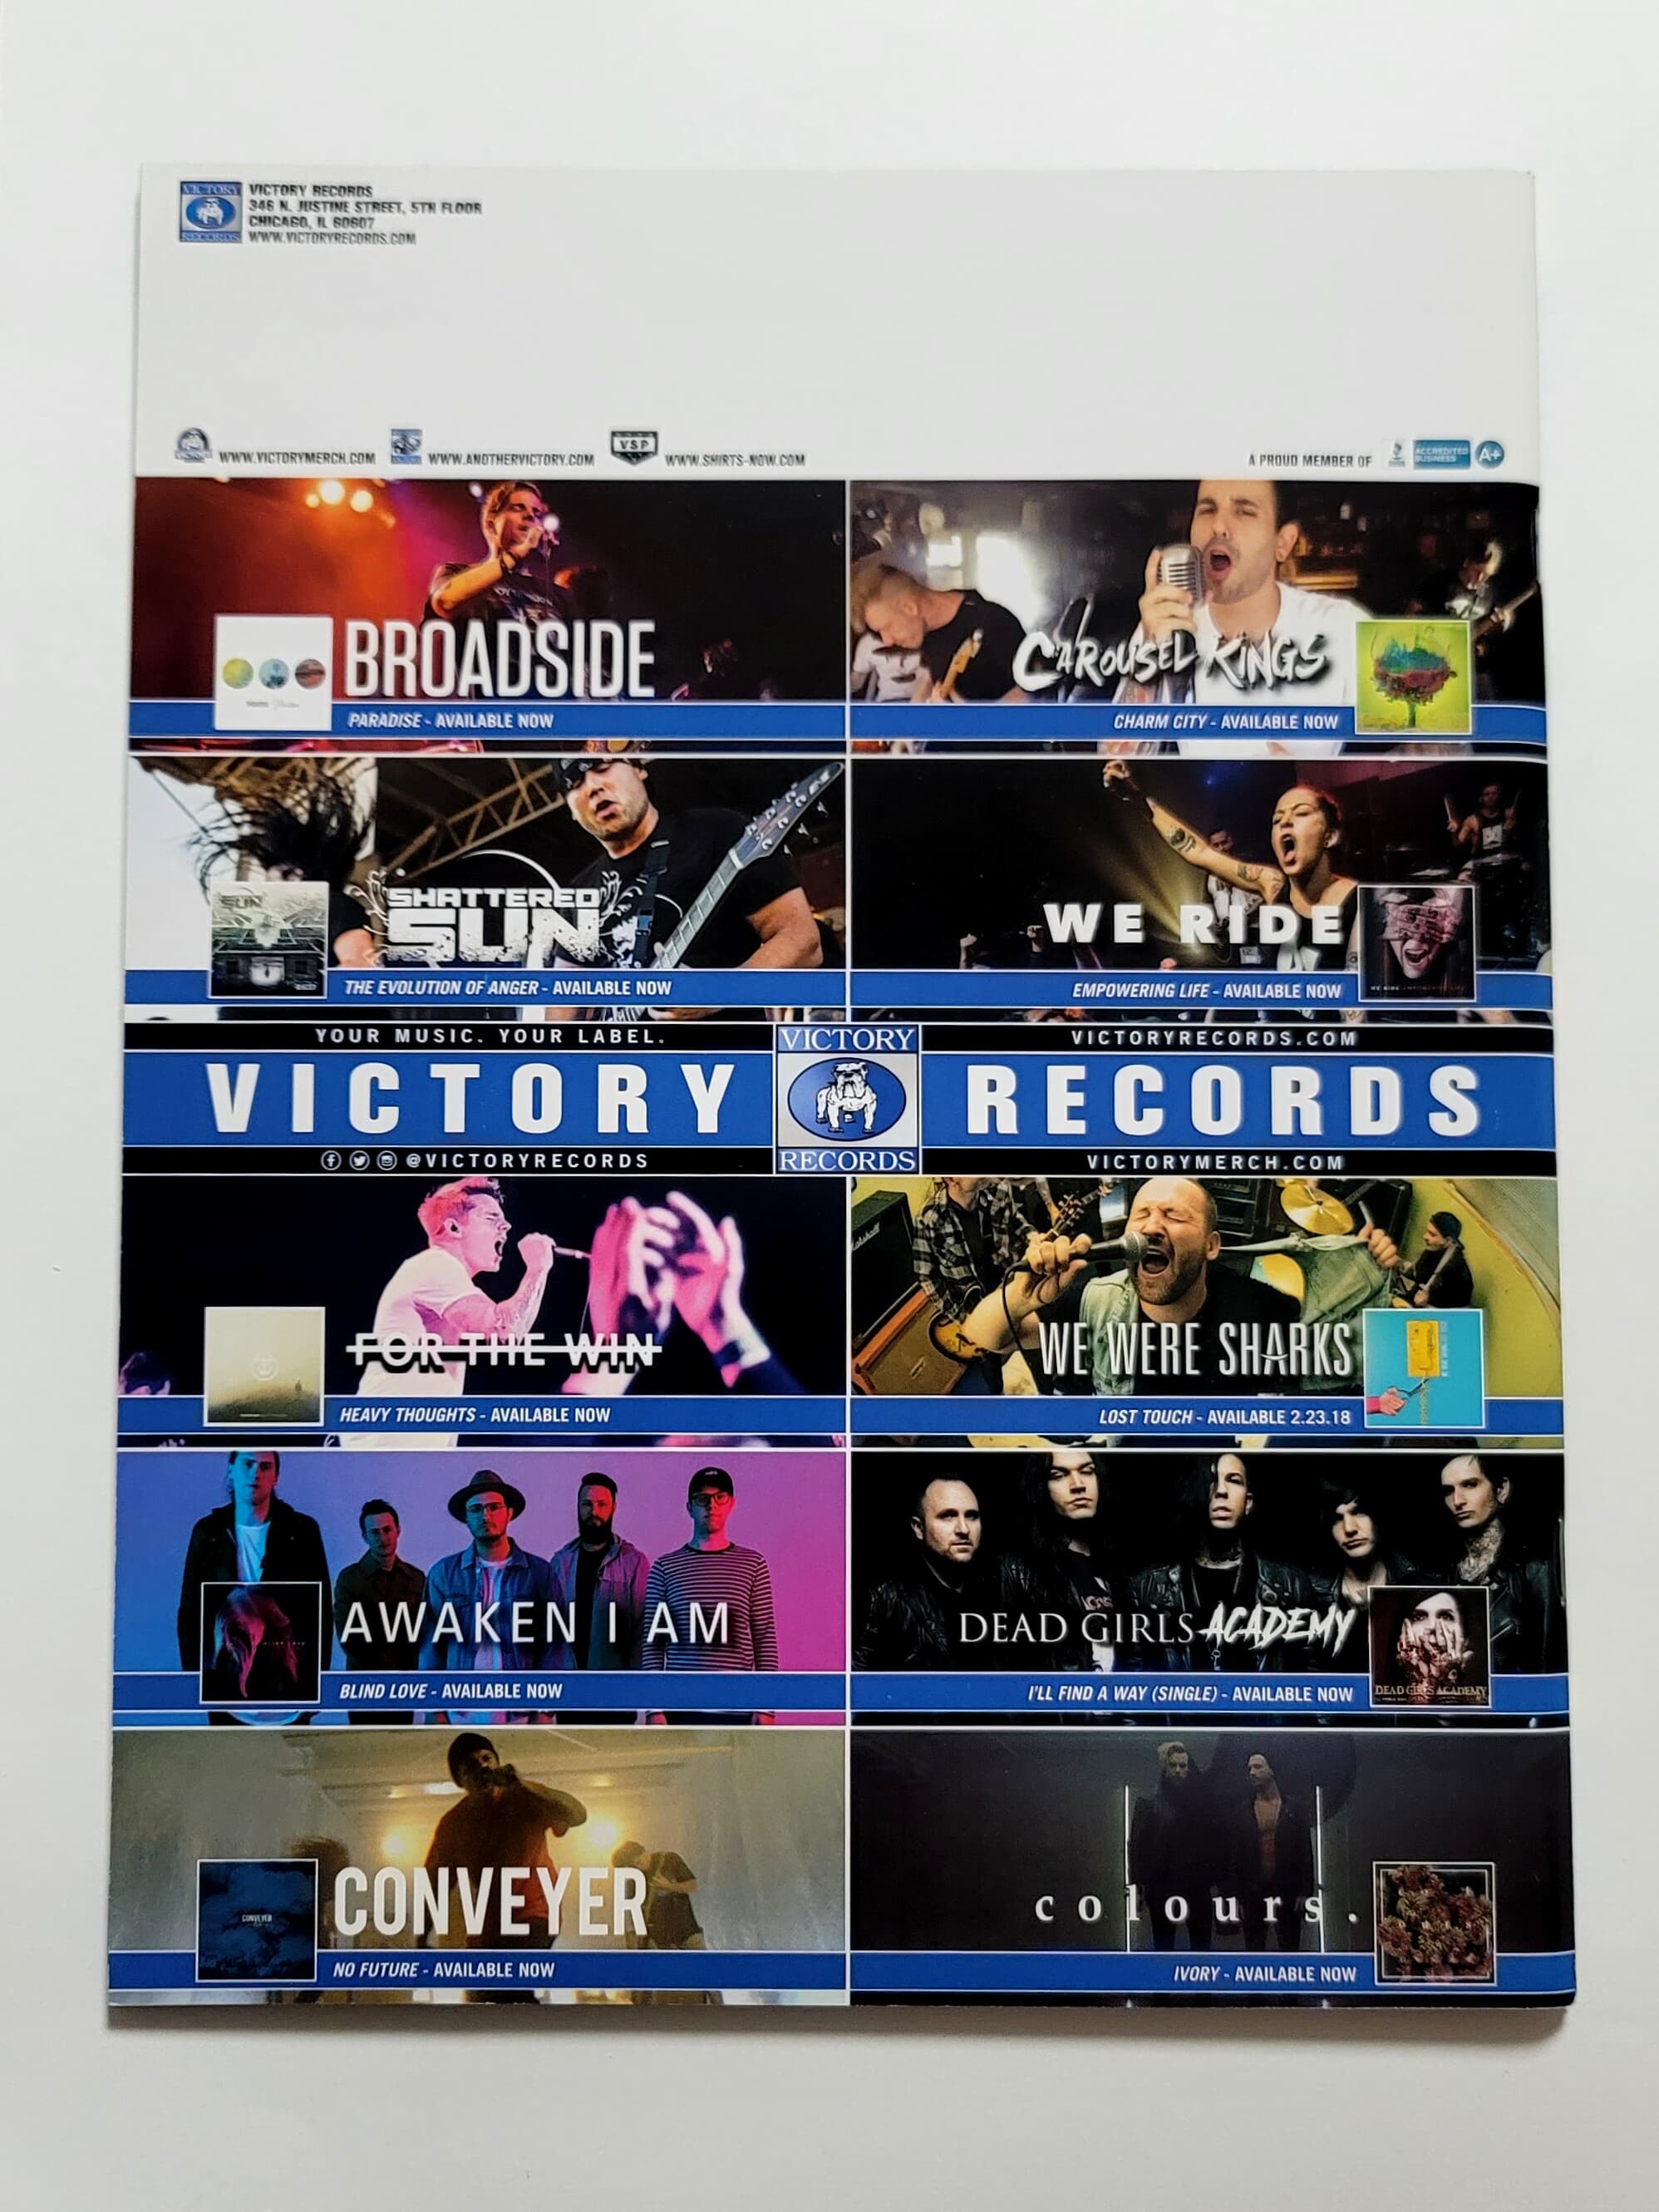 (희귀) Victory Records (빅토리레코드) Winter 2018 Magazine